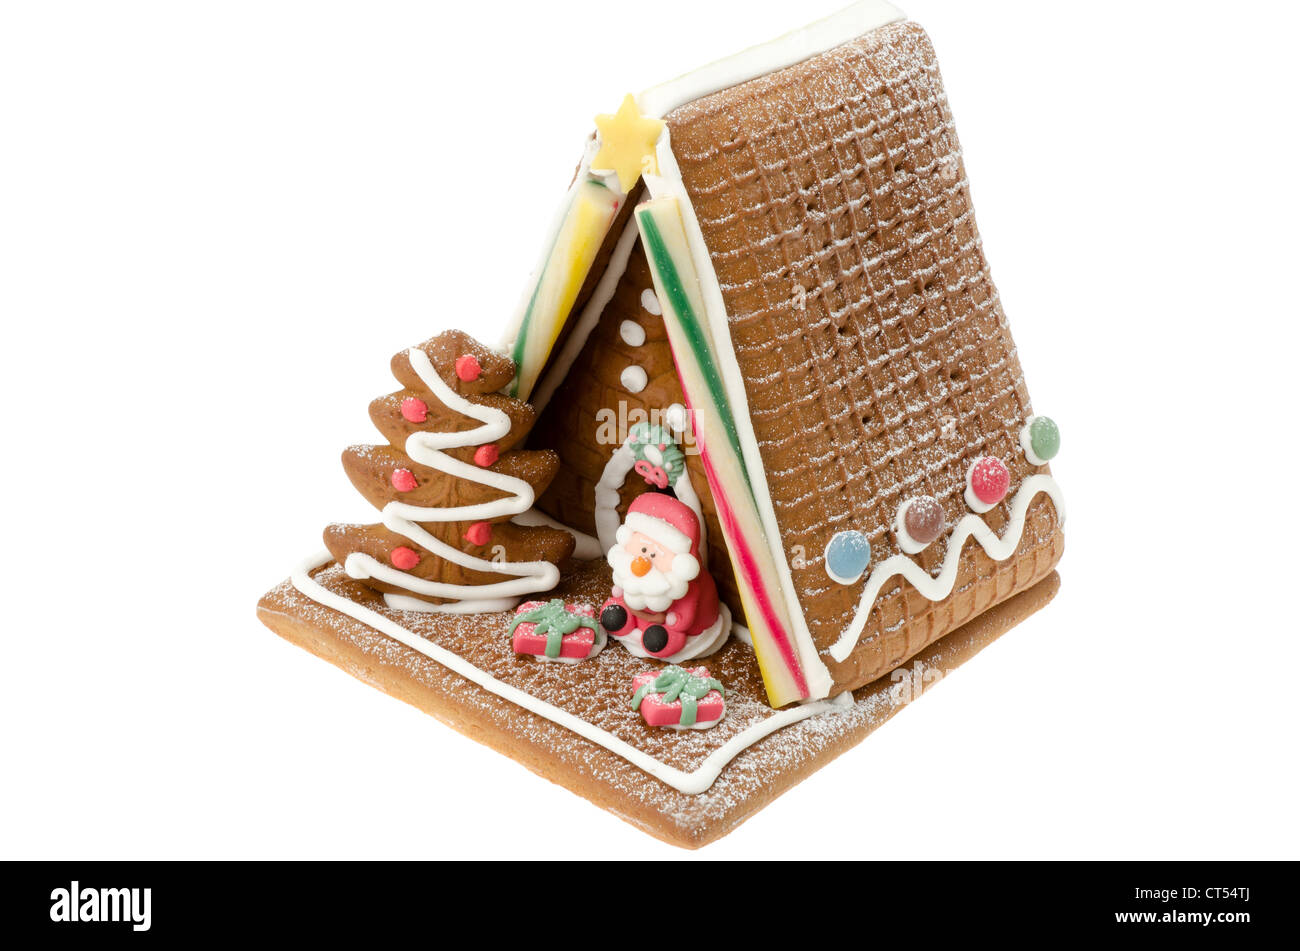 Dekorierte Weihnachten Lebkuchenhaus Stockfoto